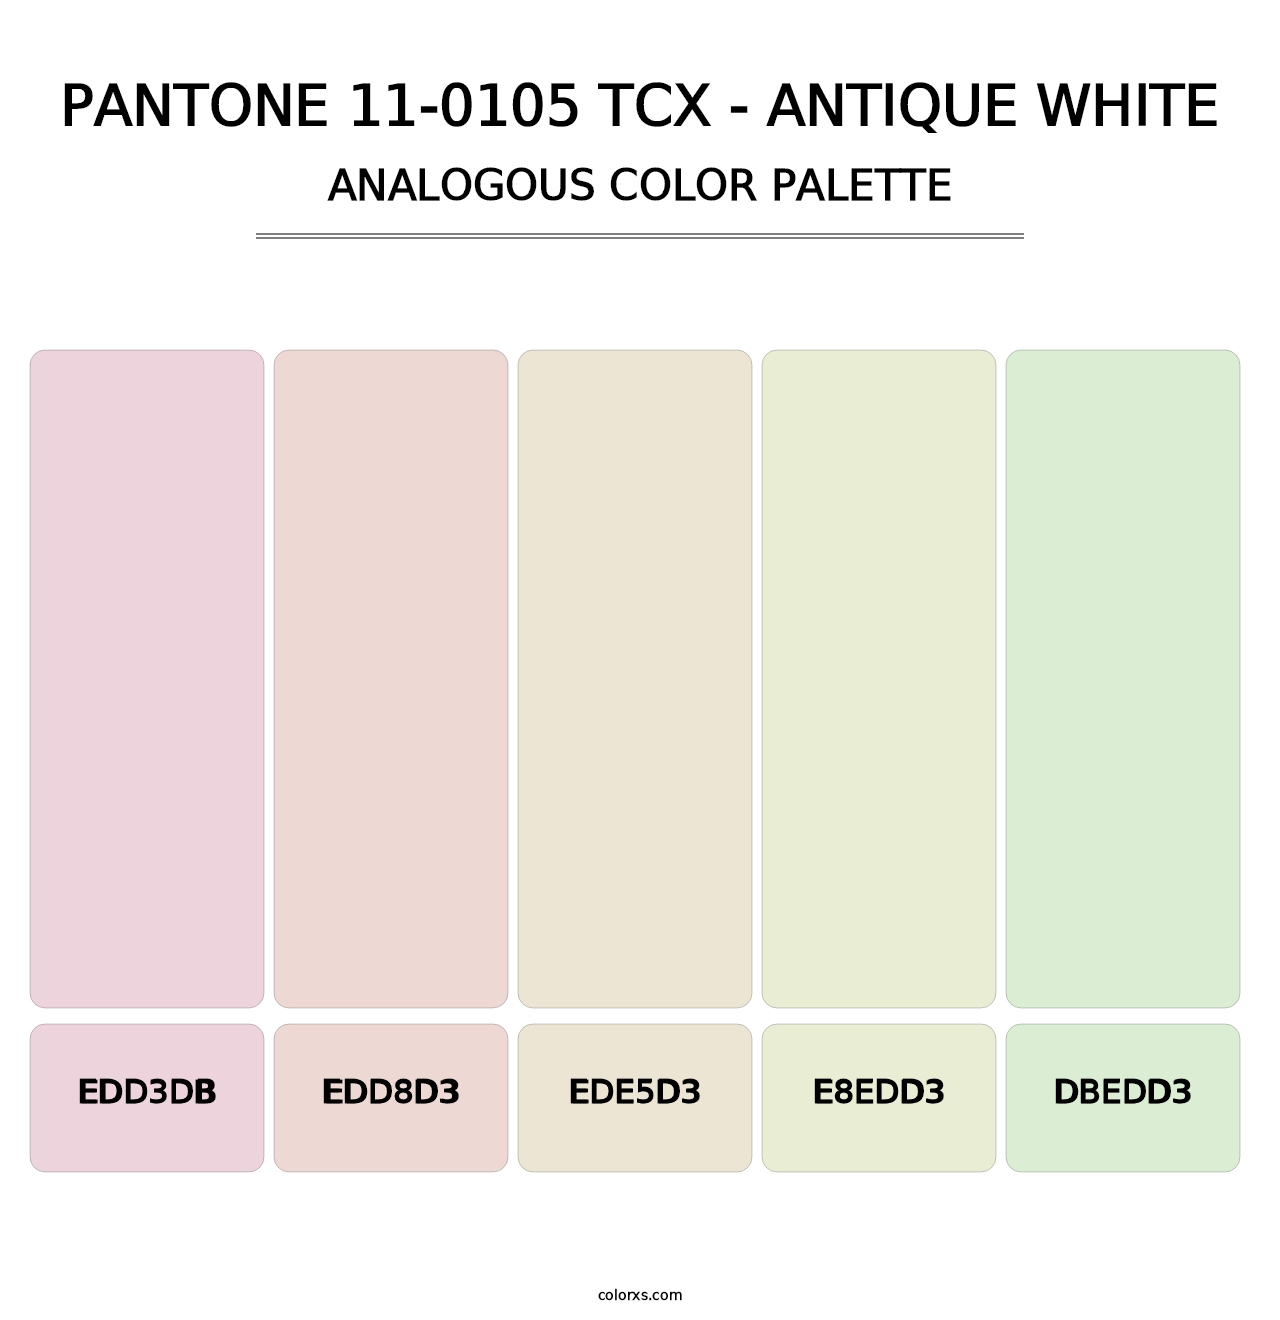 PANTONE 11-0105 TCX - Antique White - Analogous Color Palette